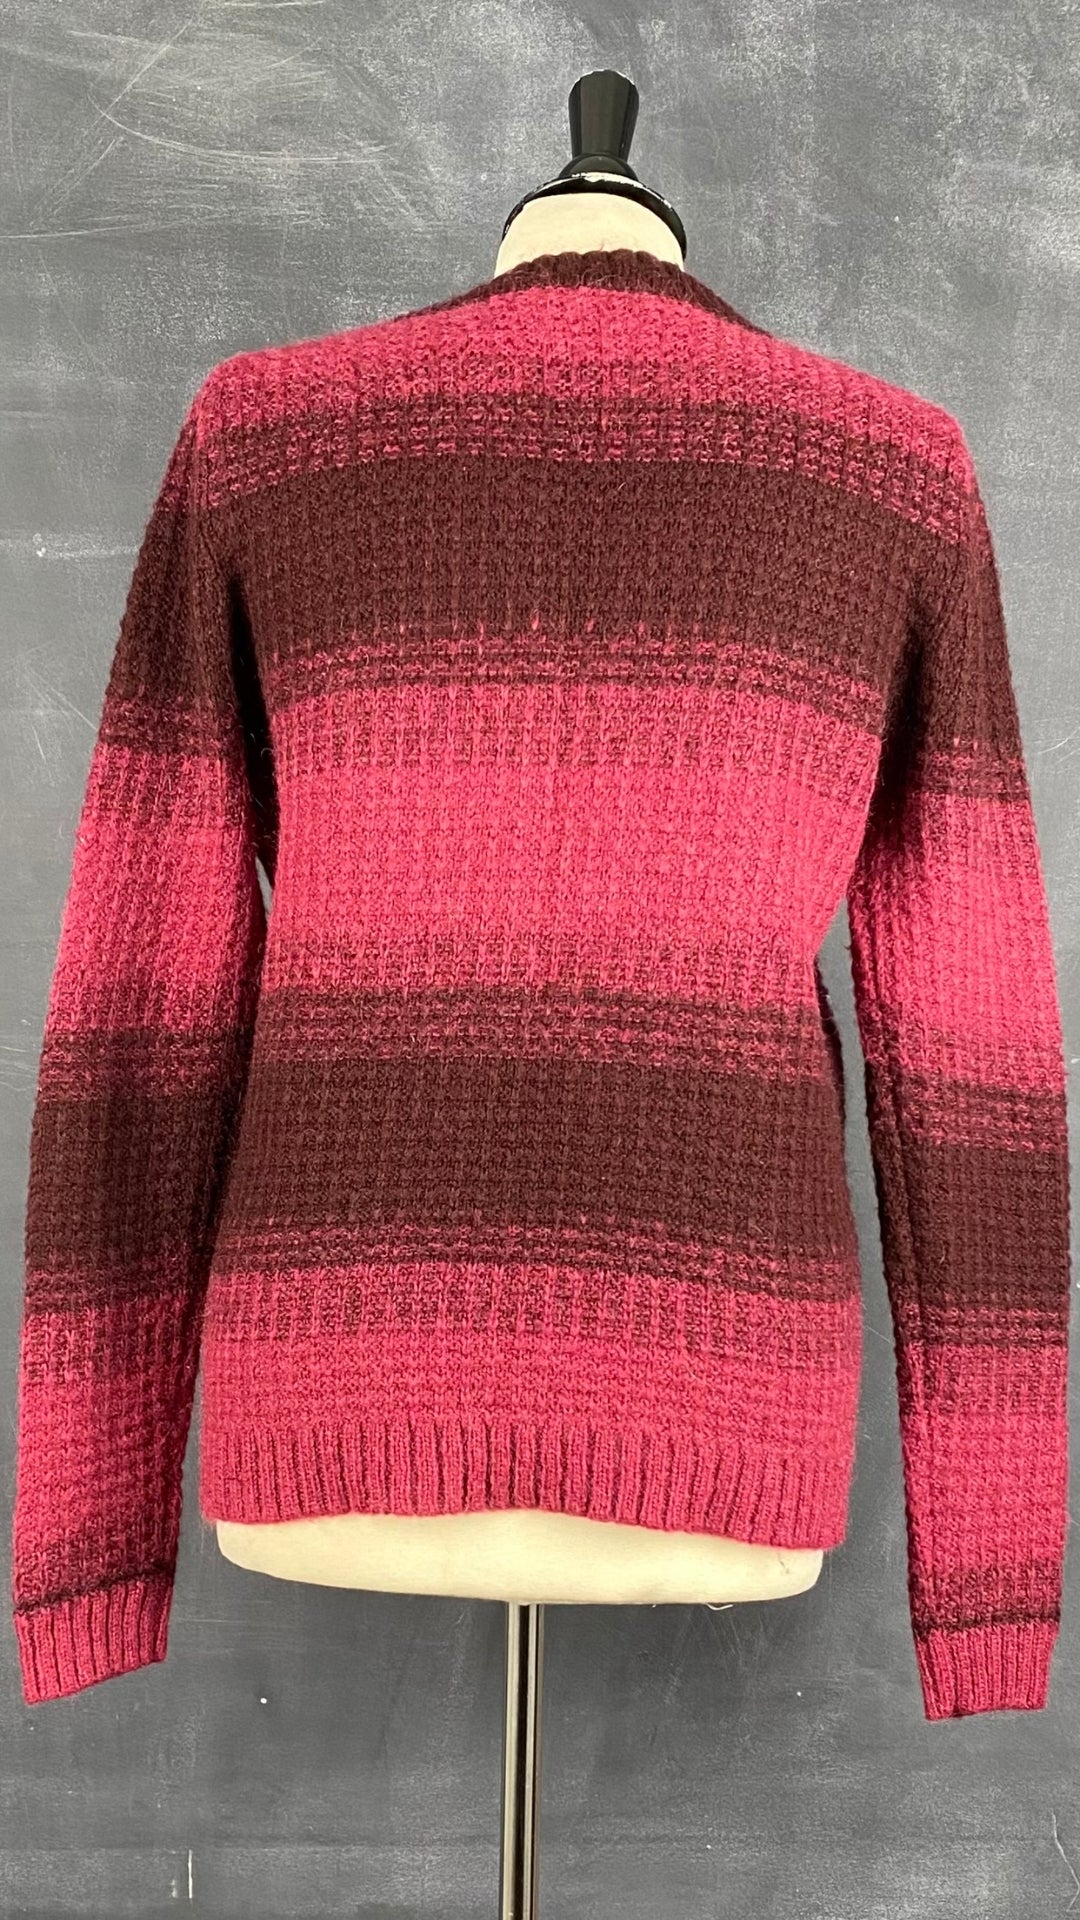 Chandail tricot douillet duo de rouge Contemporaine, taille large. Vue de dos.